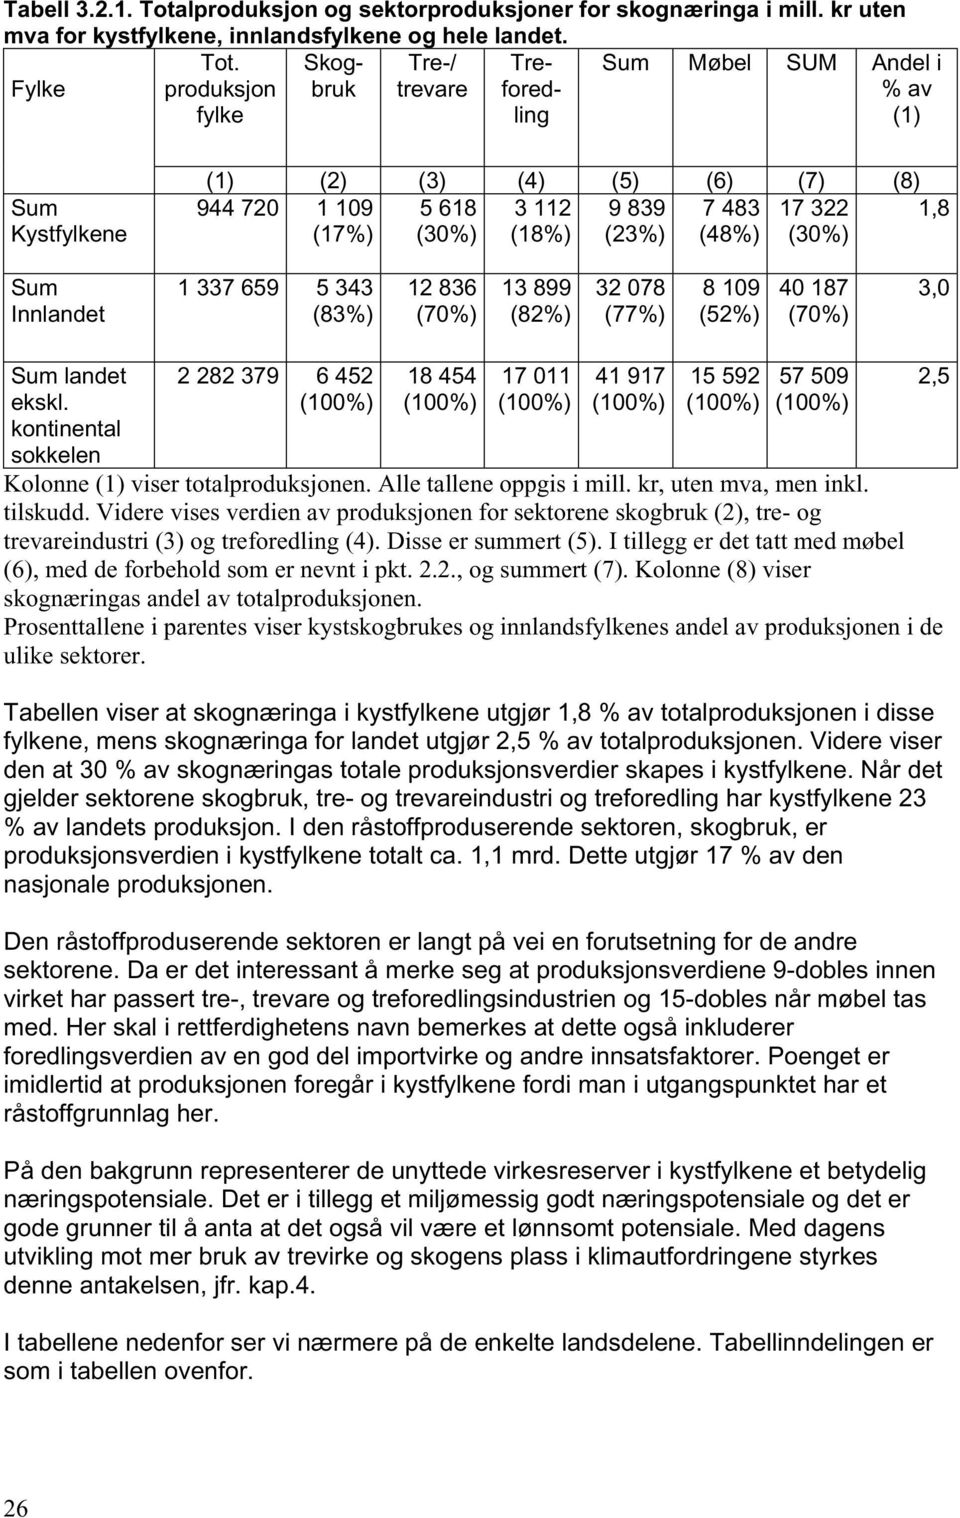 Skogbruk Tre-/ Tre- Sum Møbel SUM Andel i Fylke produksjon fylke trevare fored- ling % av (1) Sum Kystfylkene (1) (2) (3) (4) (5) (6) (7) (8) 944 720 1 109 5 618 3 112 9 839 7 483 17 322 1,8 (17%)